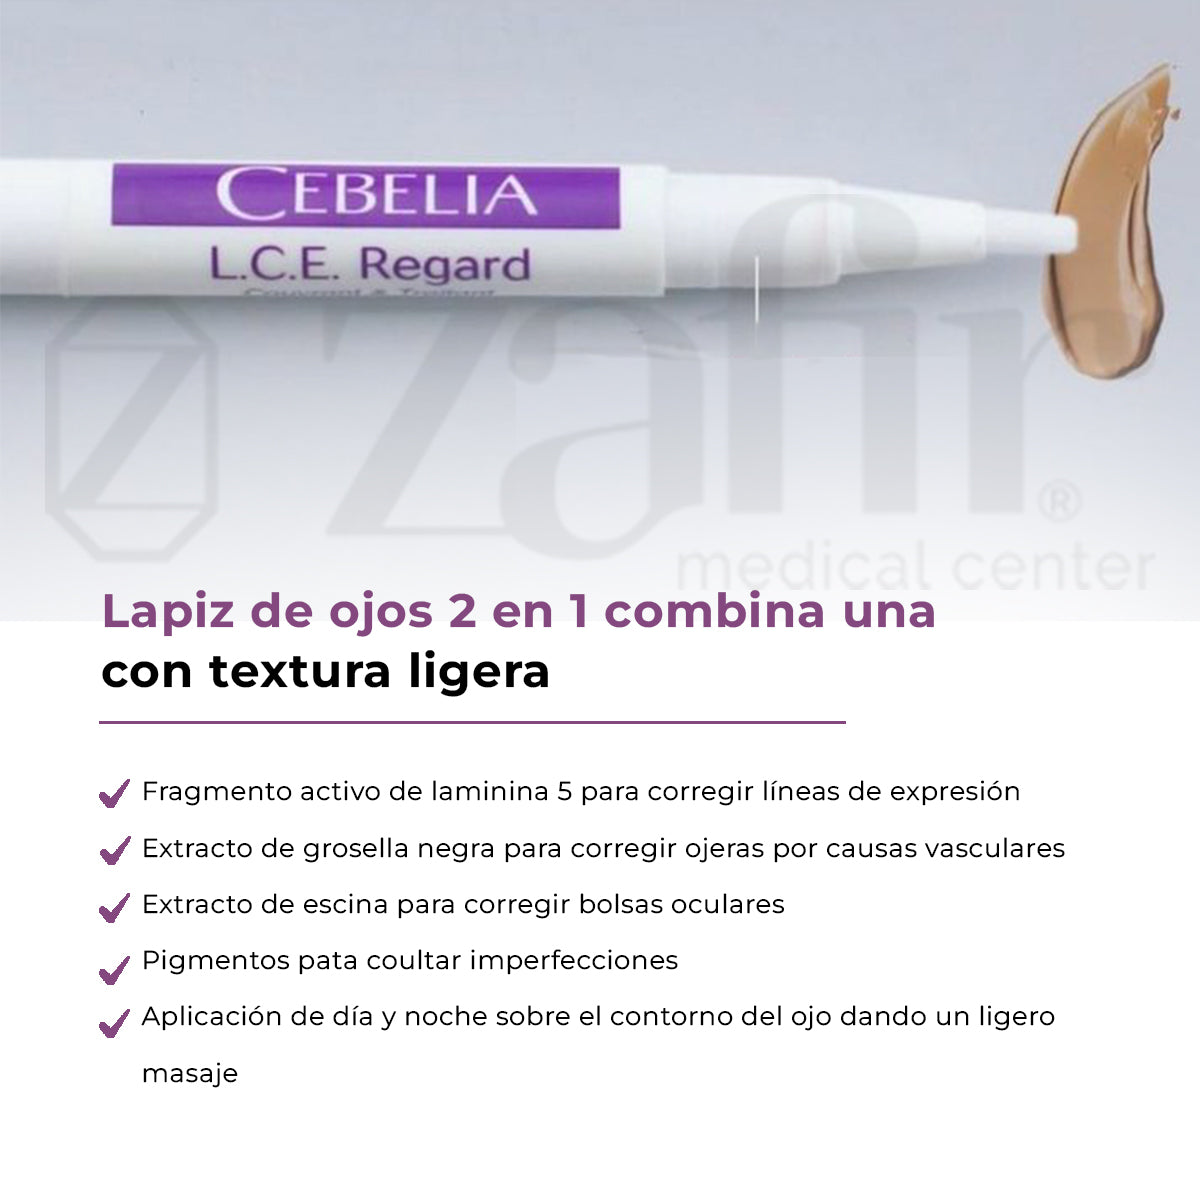 CEBELIA L.C.E. Regard - Crema para ojos reduce ojeras y líneas de expresión (1.6 ml) - Zafir Medical Center